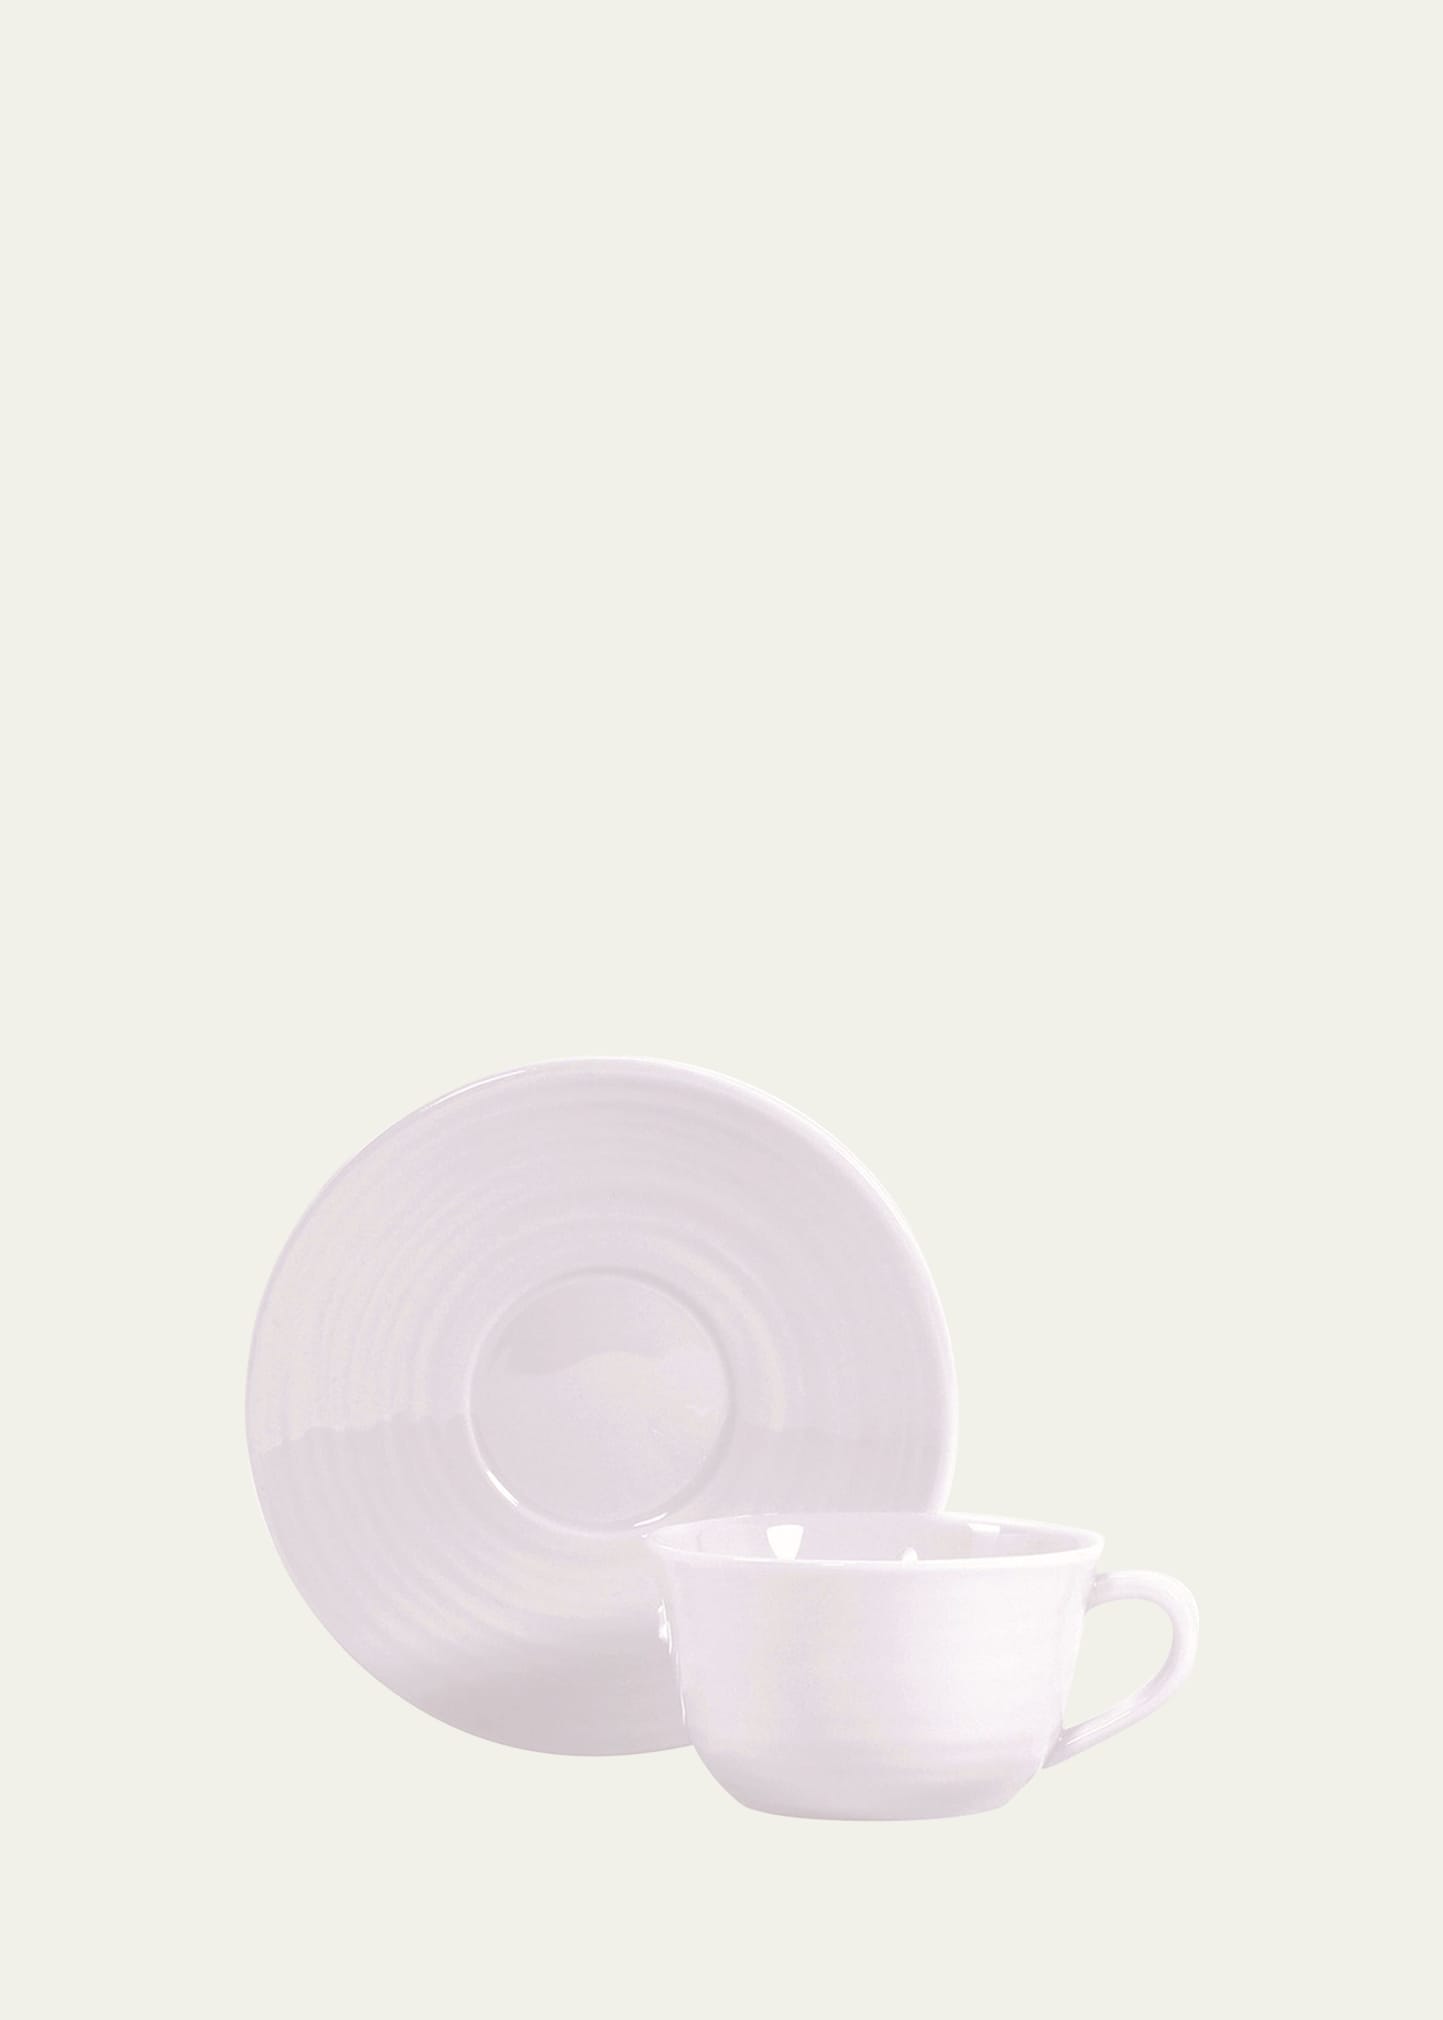 Bernardaud Origine Tea Saucer, White